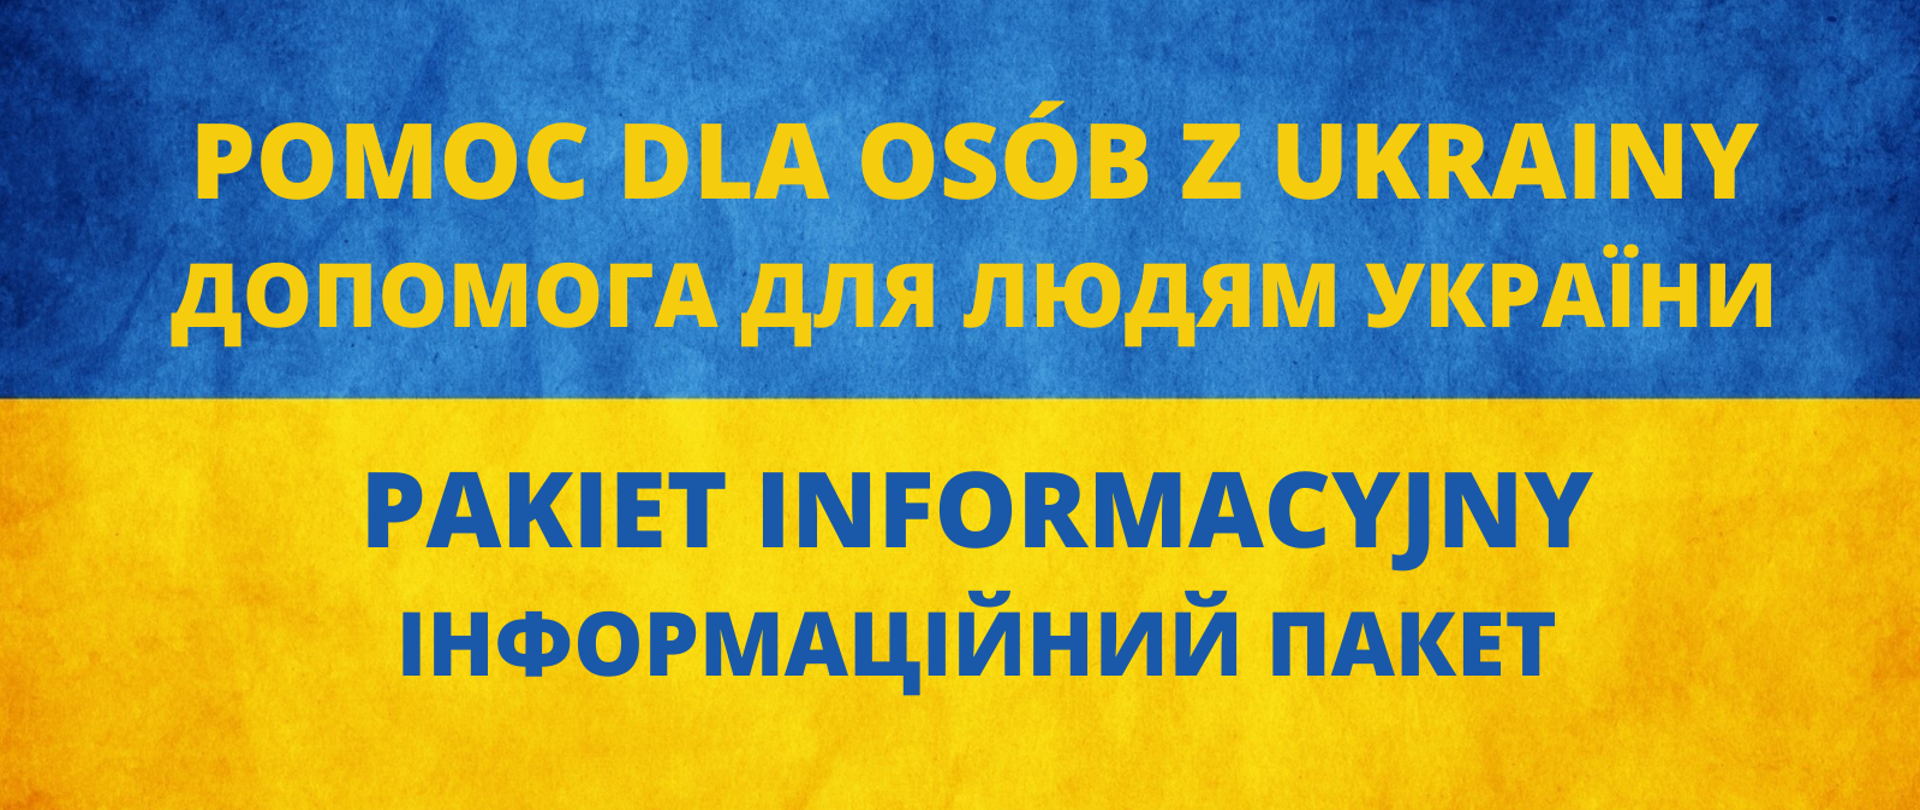 Flaga Ukrainy (kolor niebieski i żółty) jako tło, na nim tekst "Pomoc dla osób z Ukrainy pakiet informacyjny" tekst, także w języku ukraińskim.